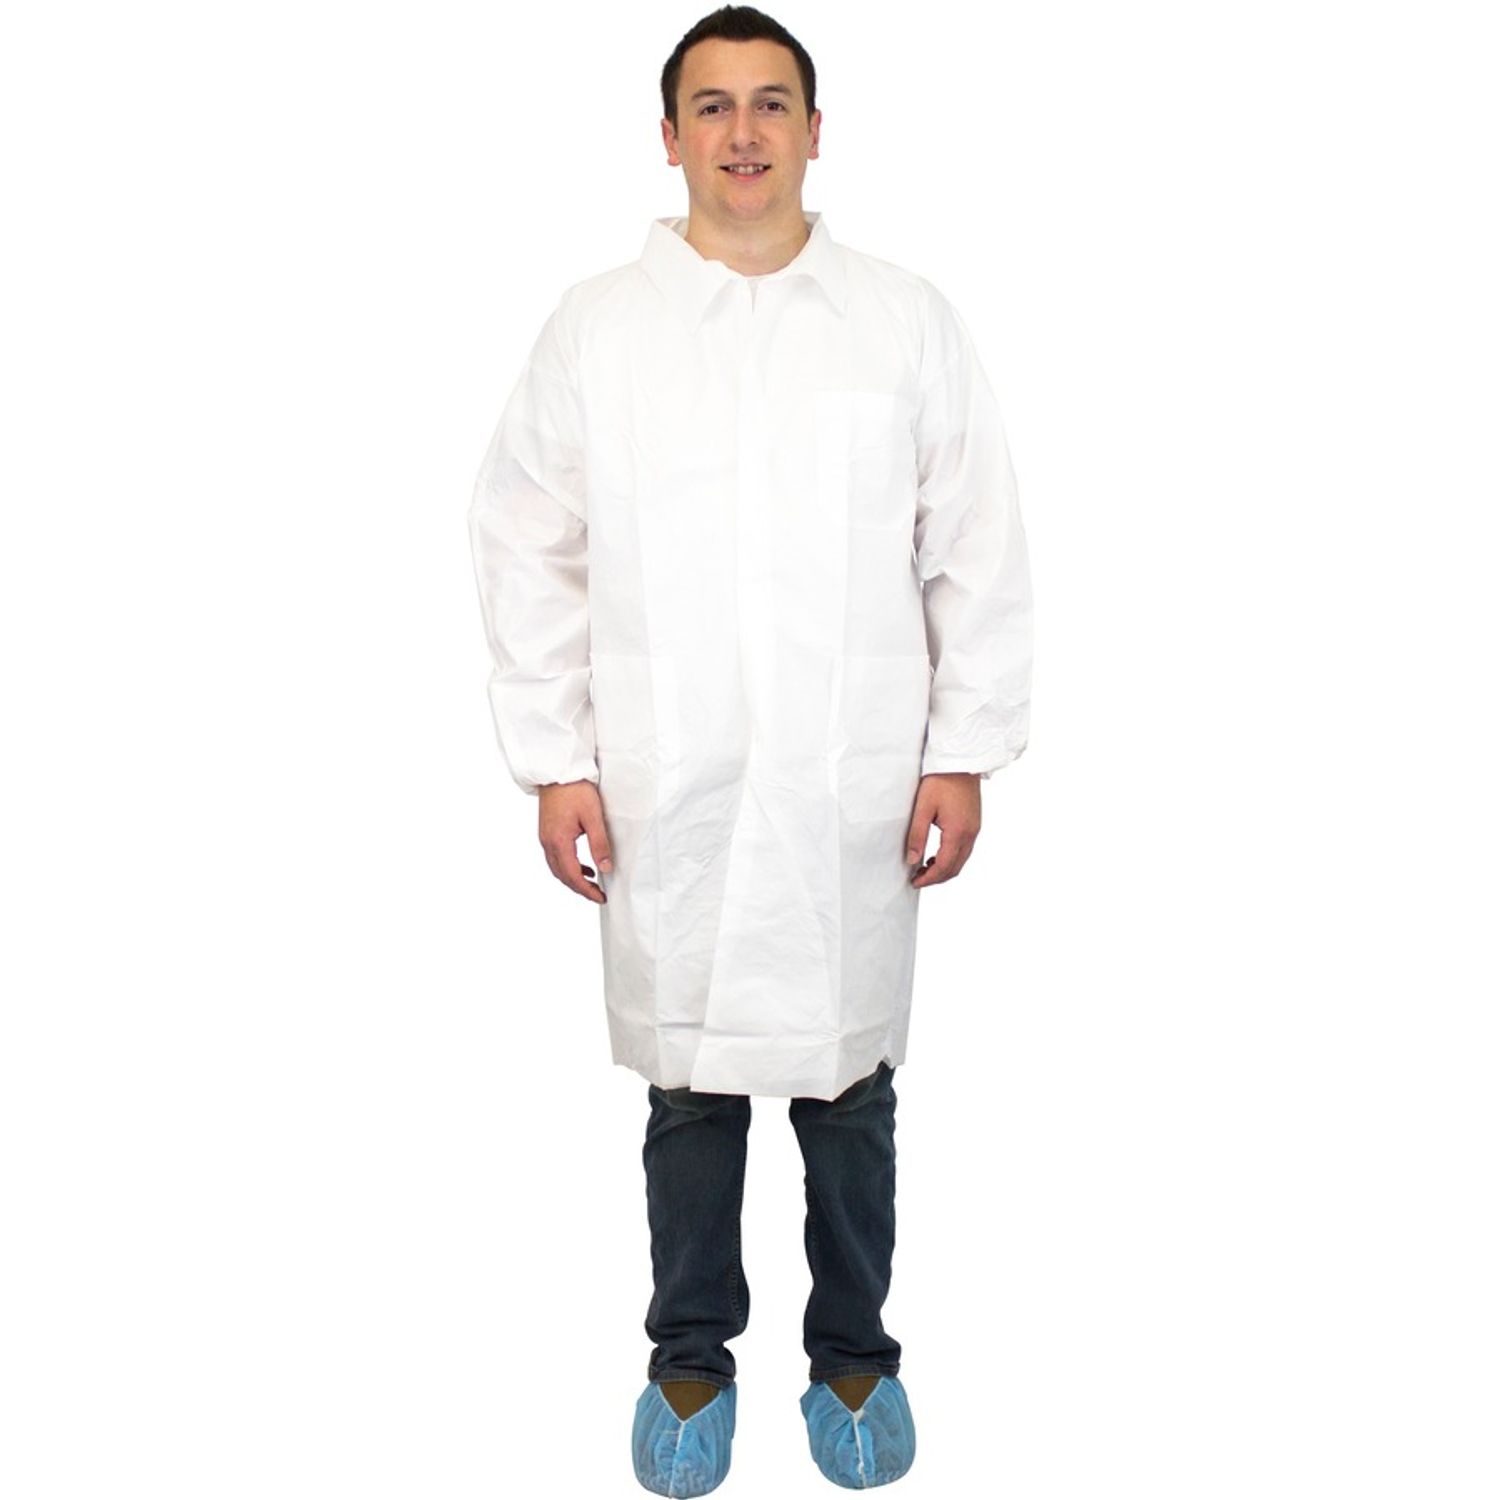 White Lab Coats 5-Xtra Large Size, Polypropylene, 60 g/m2